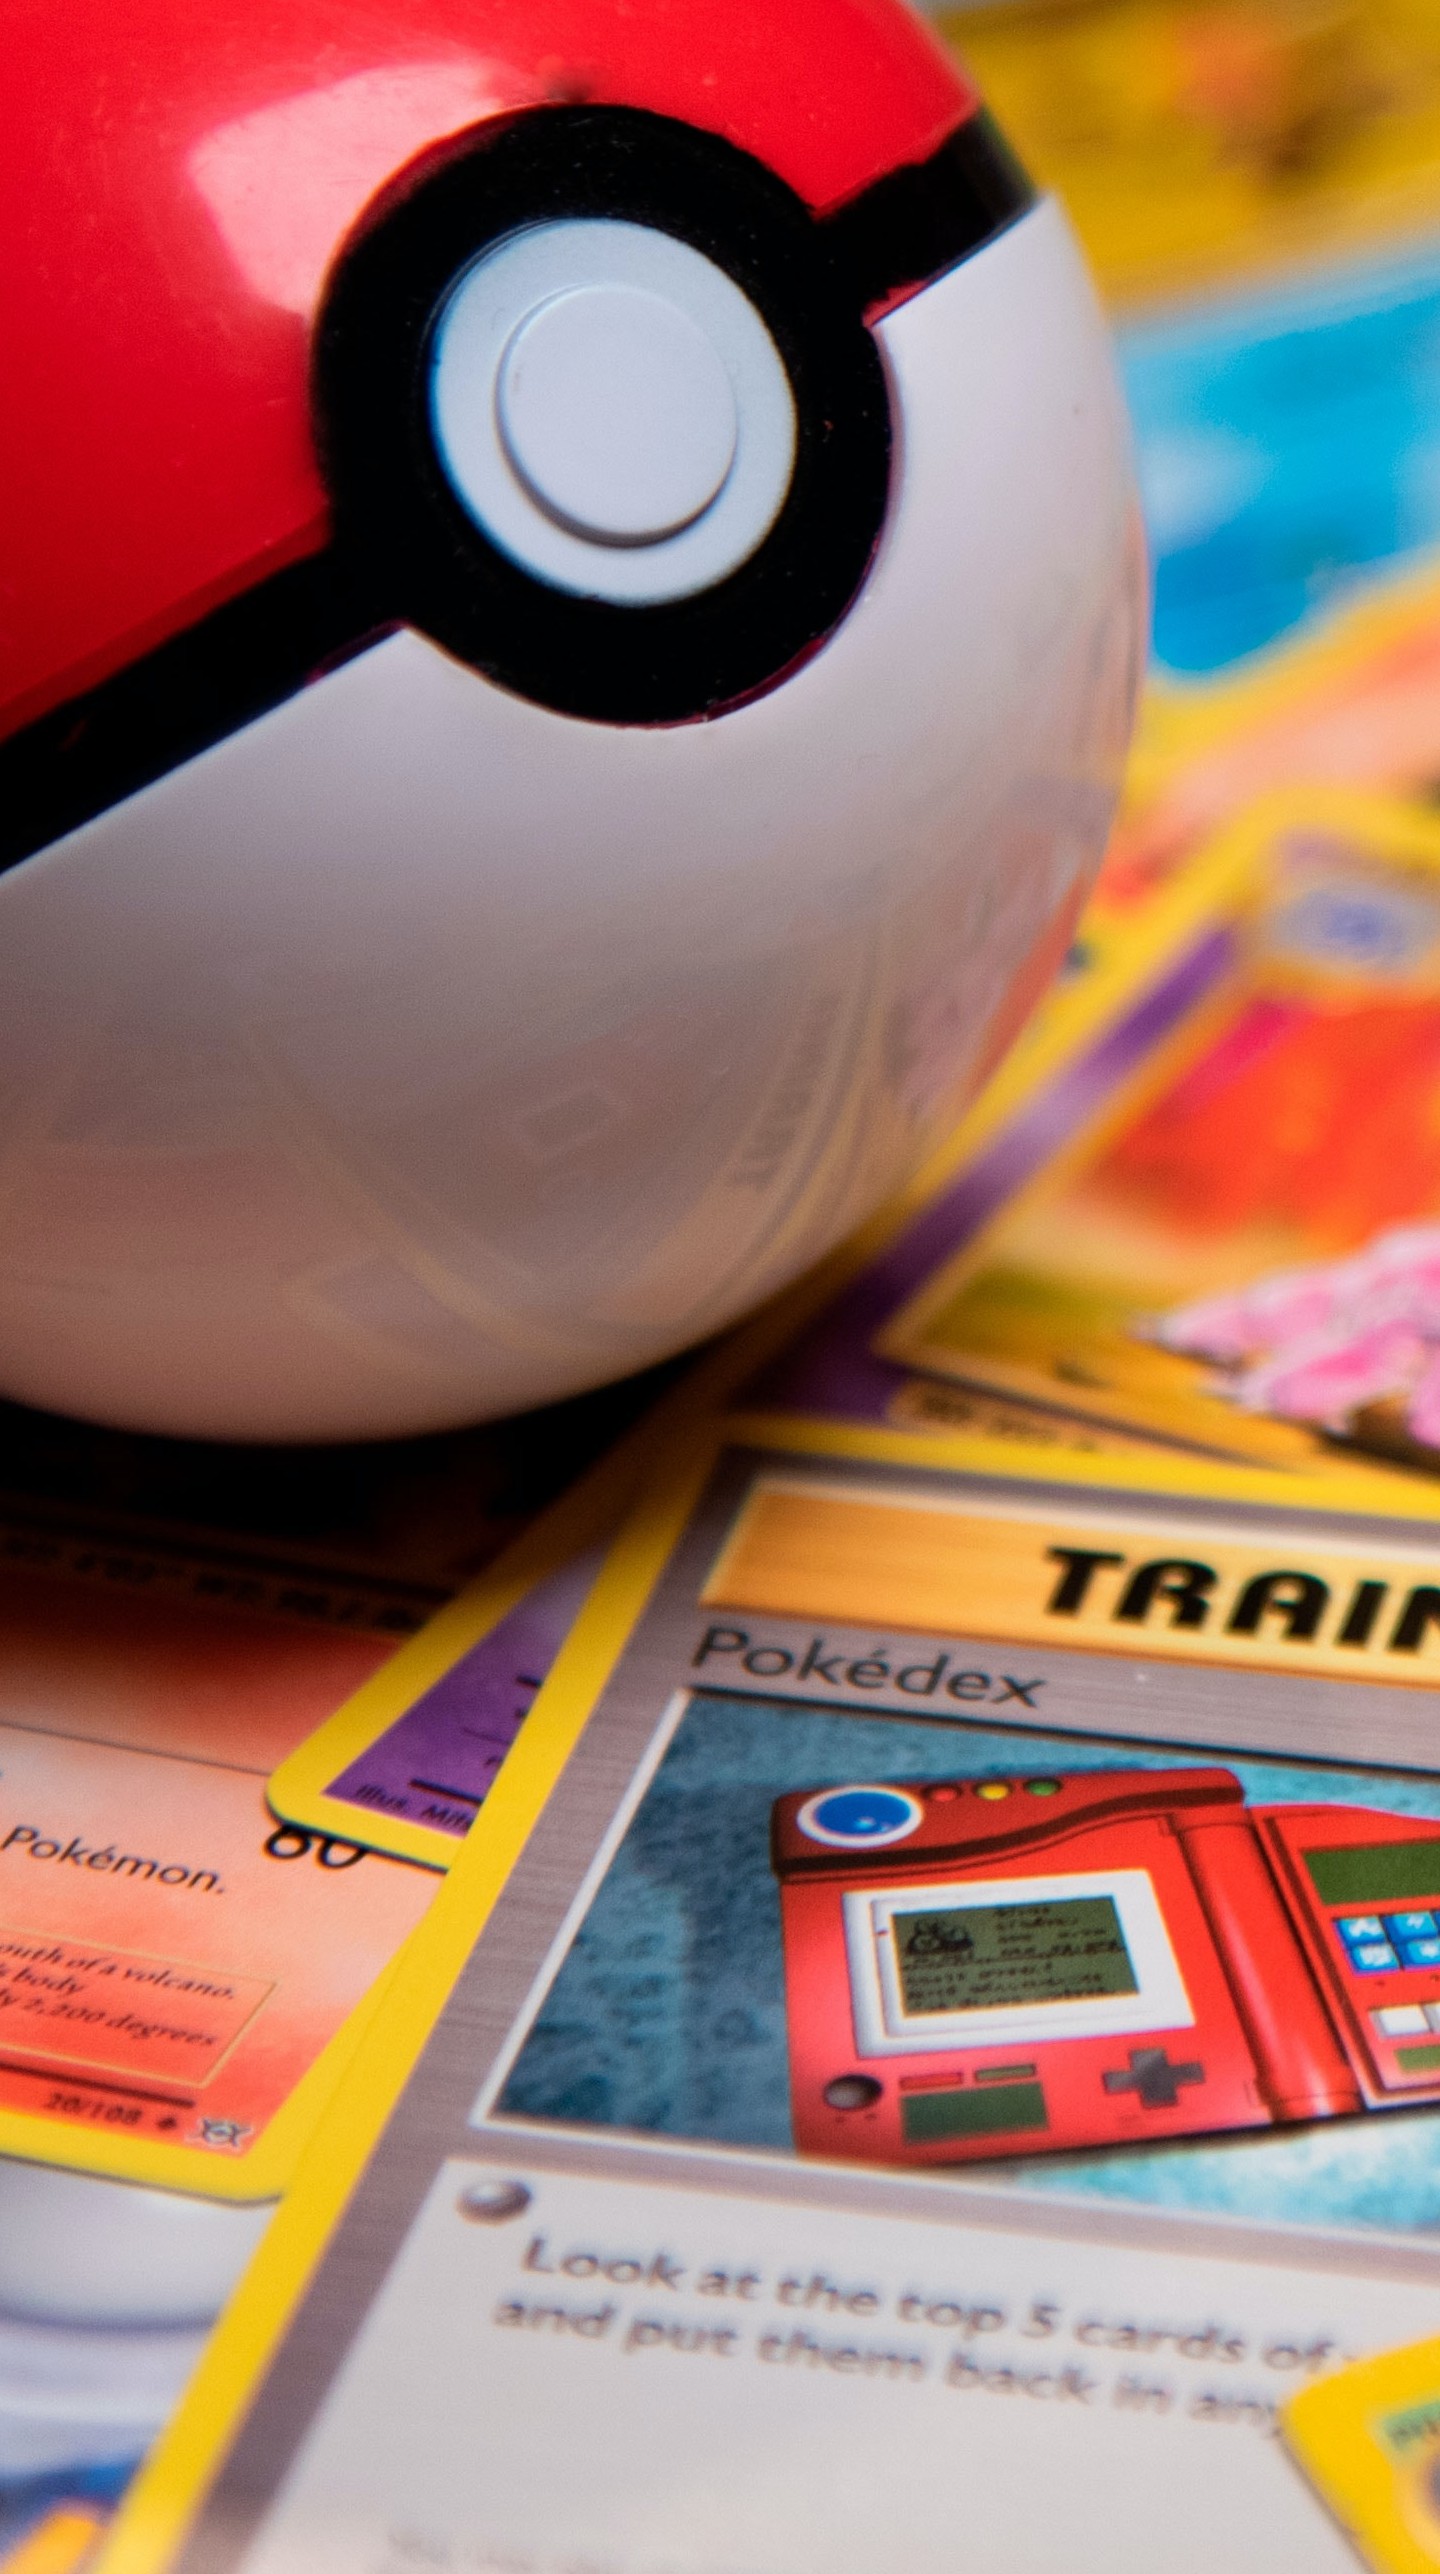 O mercado bilionário das cartas de Pokémon – Varejo S.A